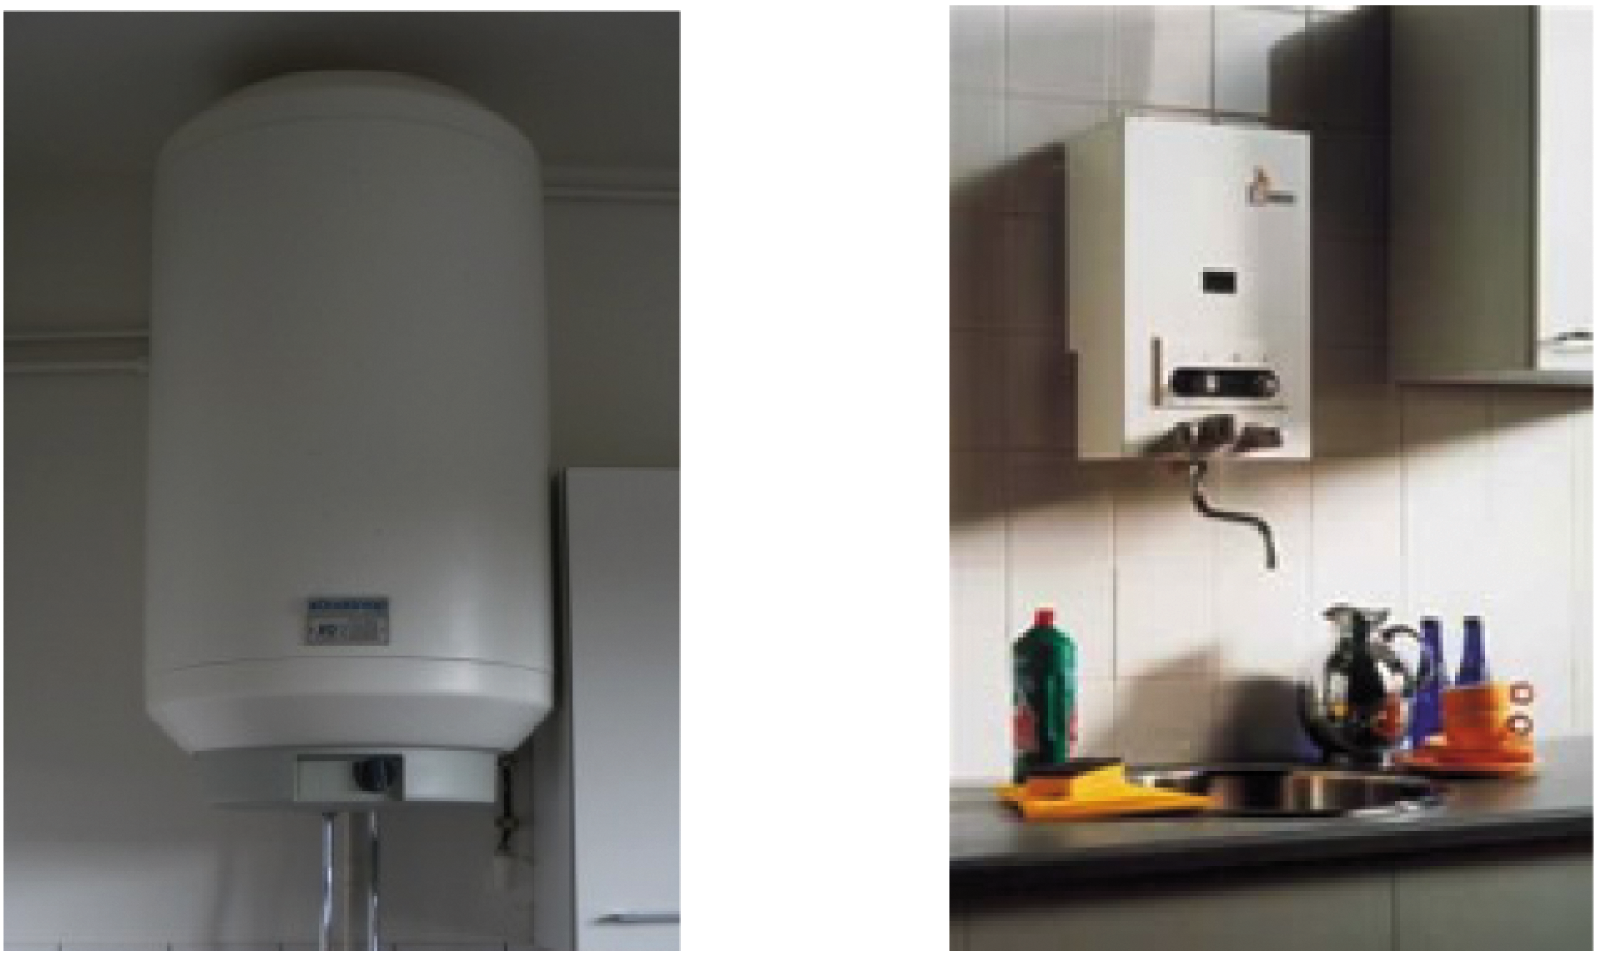 Afb. 11 Elektrische boiler (links) en geiser (rechts)